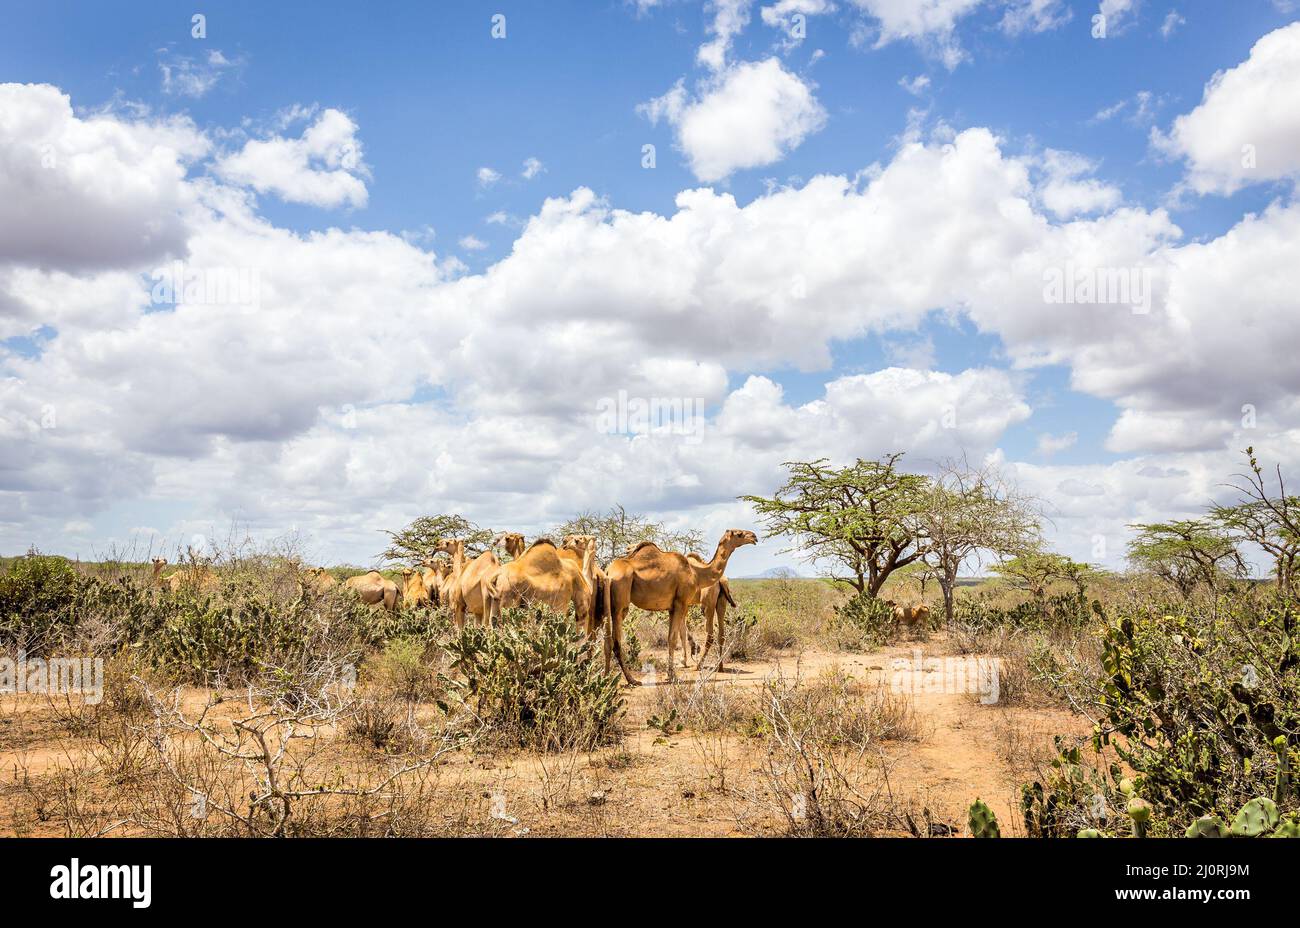 Herd of camels on savannah plains in Kenya Stock Photo